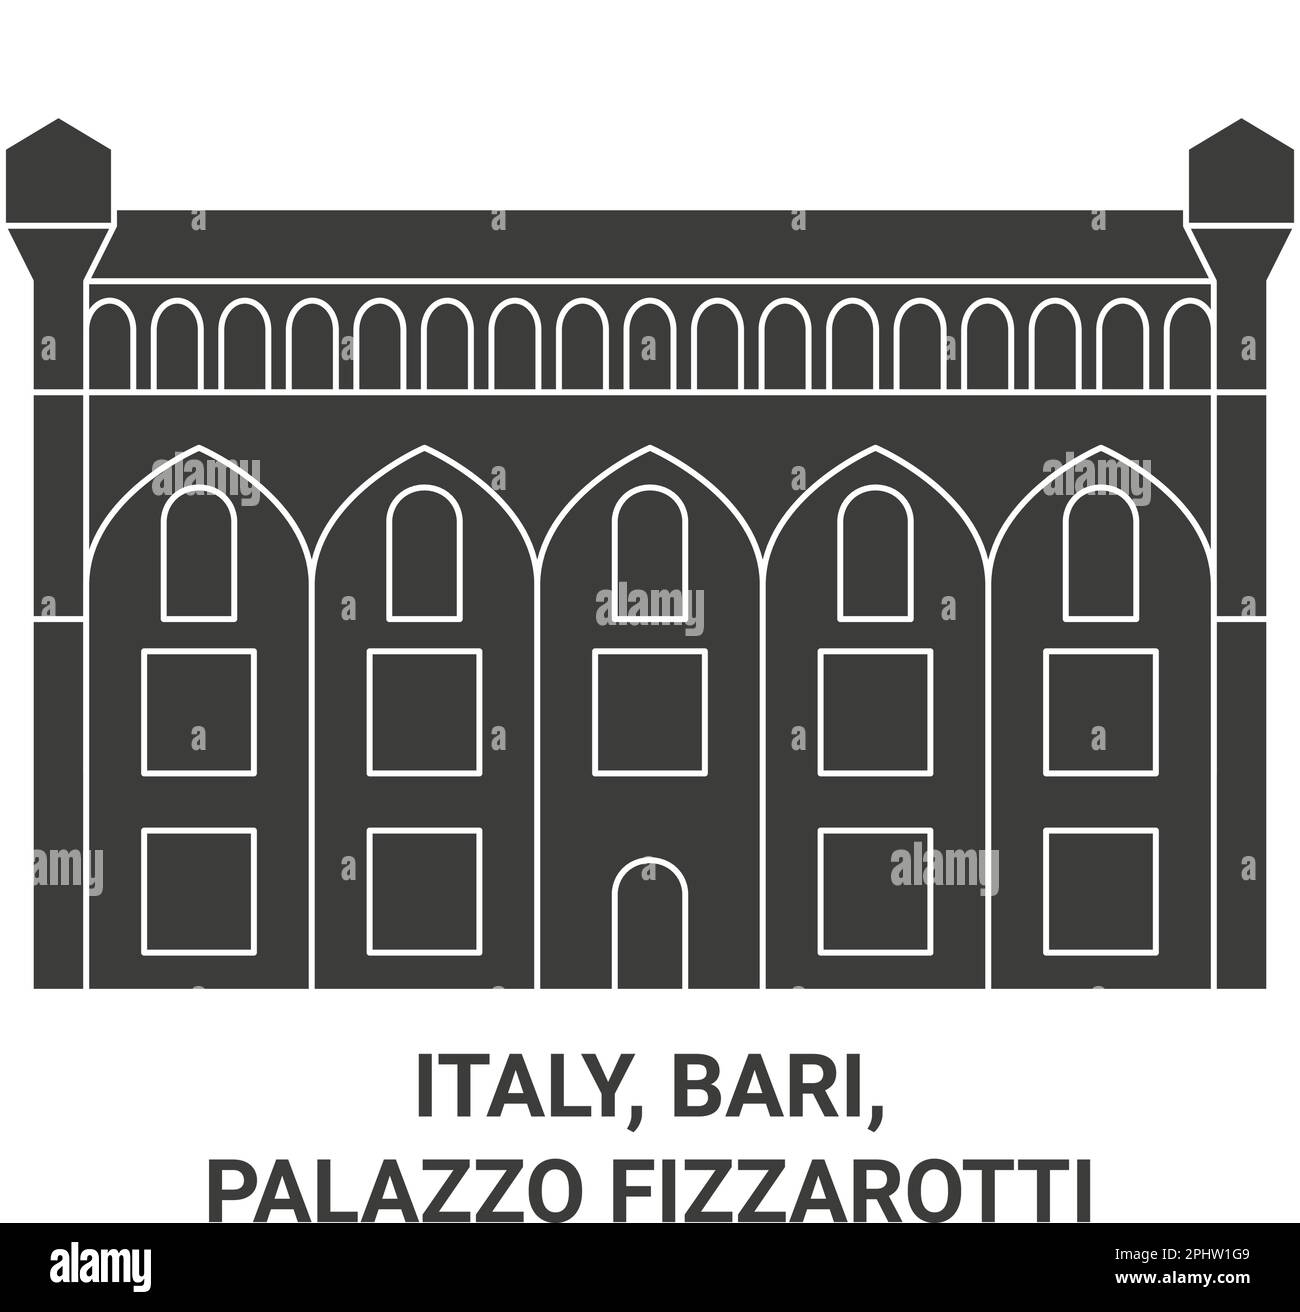 Italia, Bari, Palazzo Fizzarotti ilustración vectorial de referencia de viaje Ilustración del Vector